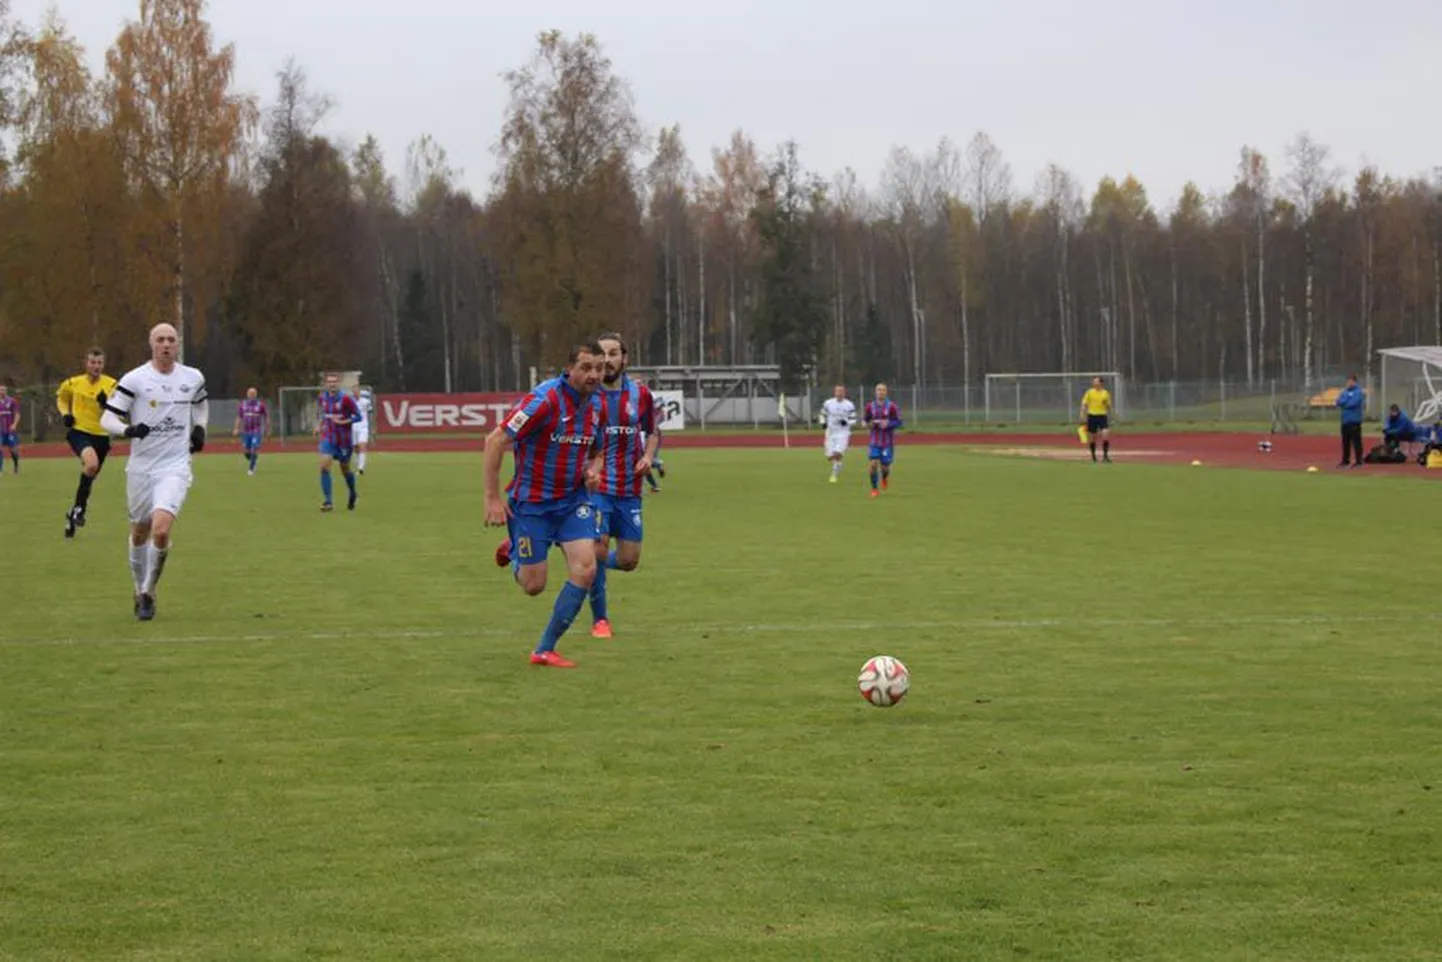 Paide linnameeskonna ellujäämismängu kangelaseks kujunes meeskonna suurim väravakütt Vjatšeslav Zahovaiko (nr 21). Tartu Tammeka väravasse lõi kogenud ründaja kolm palli.